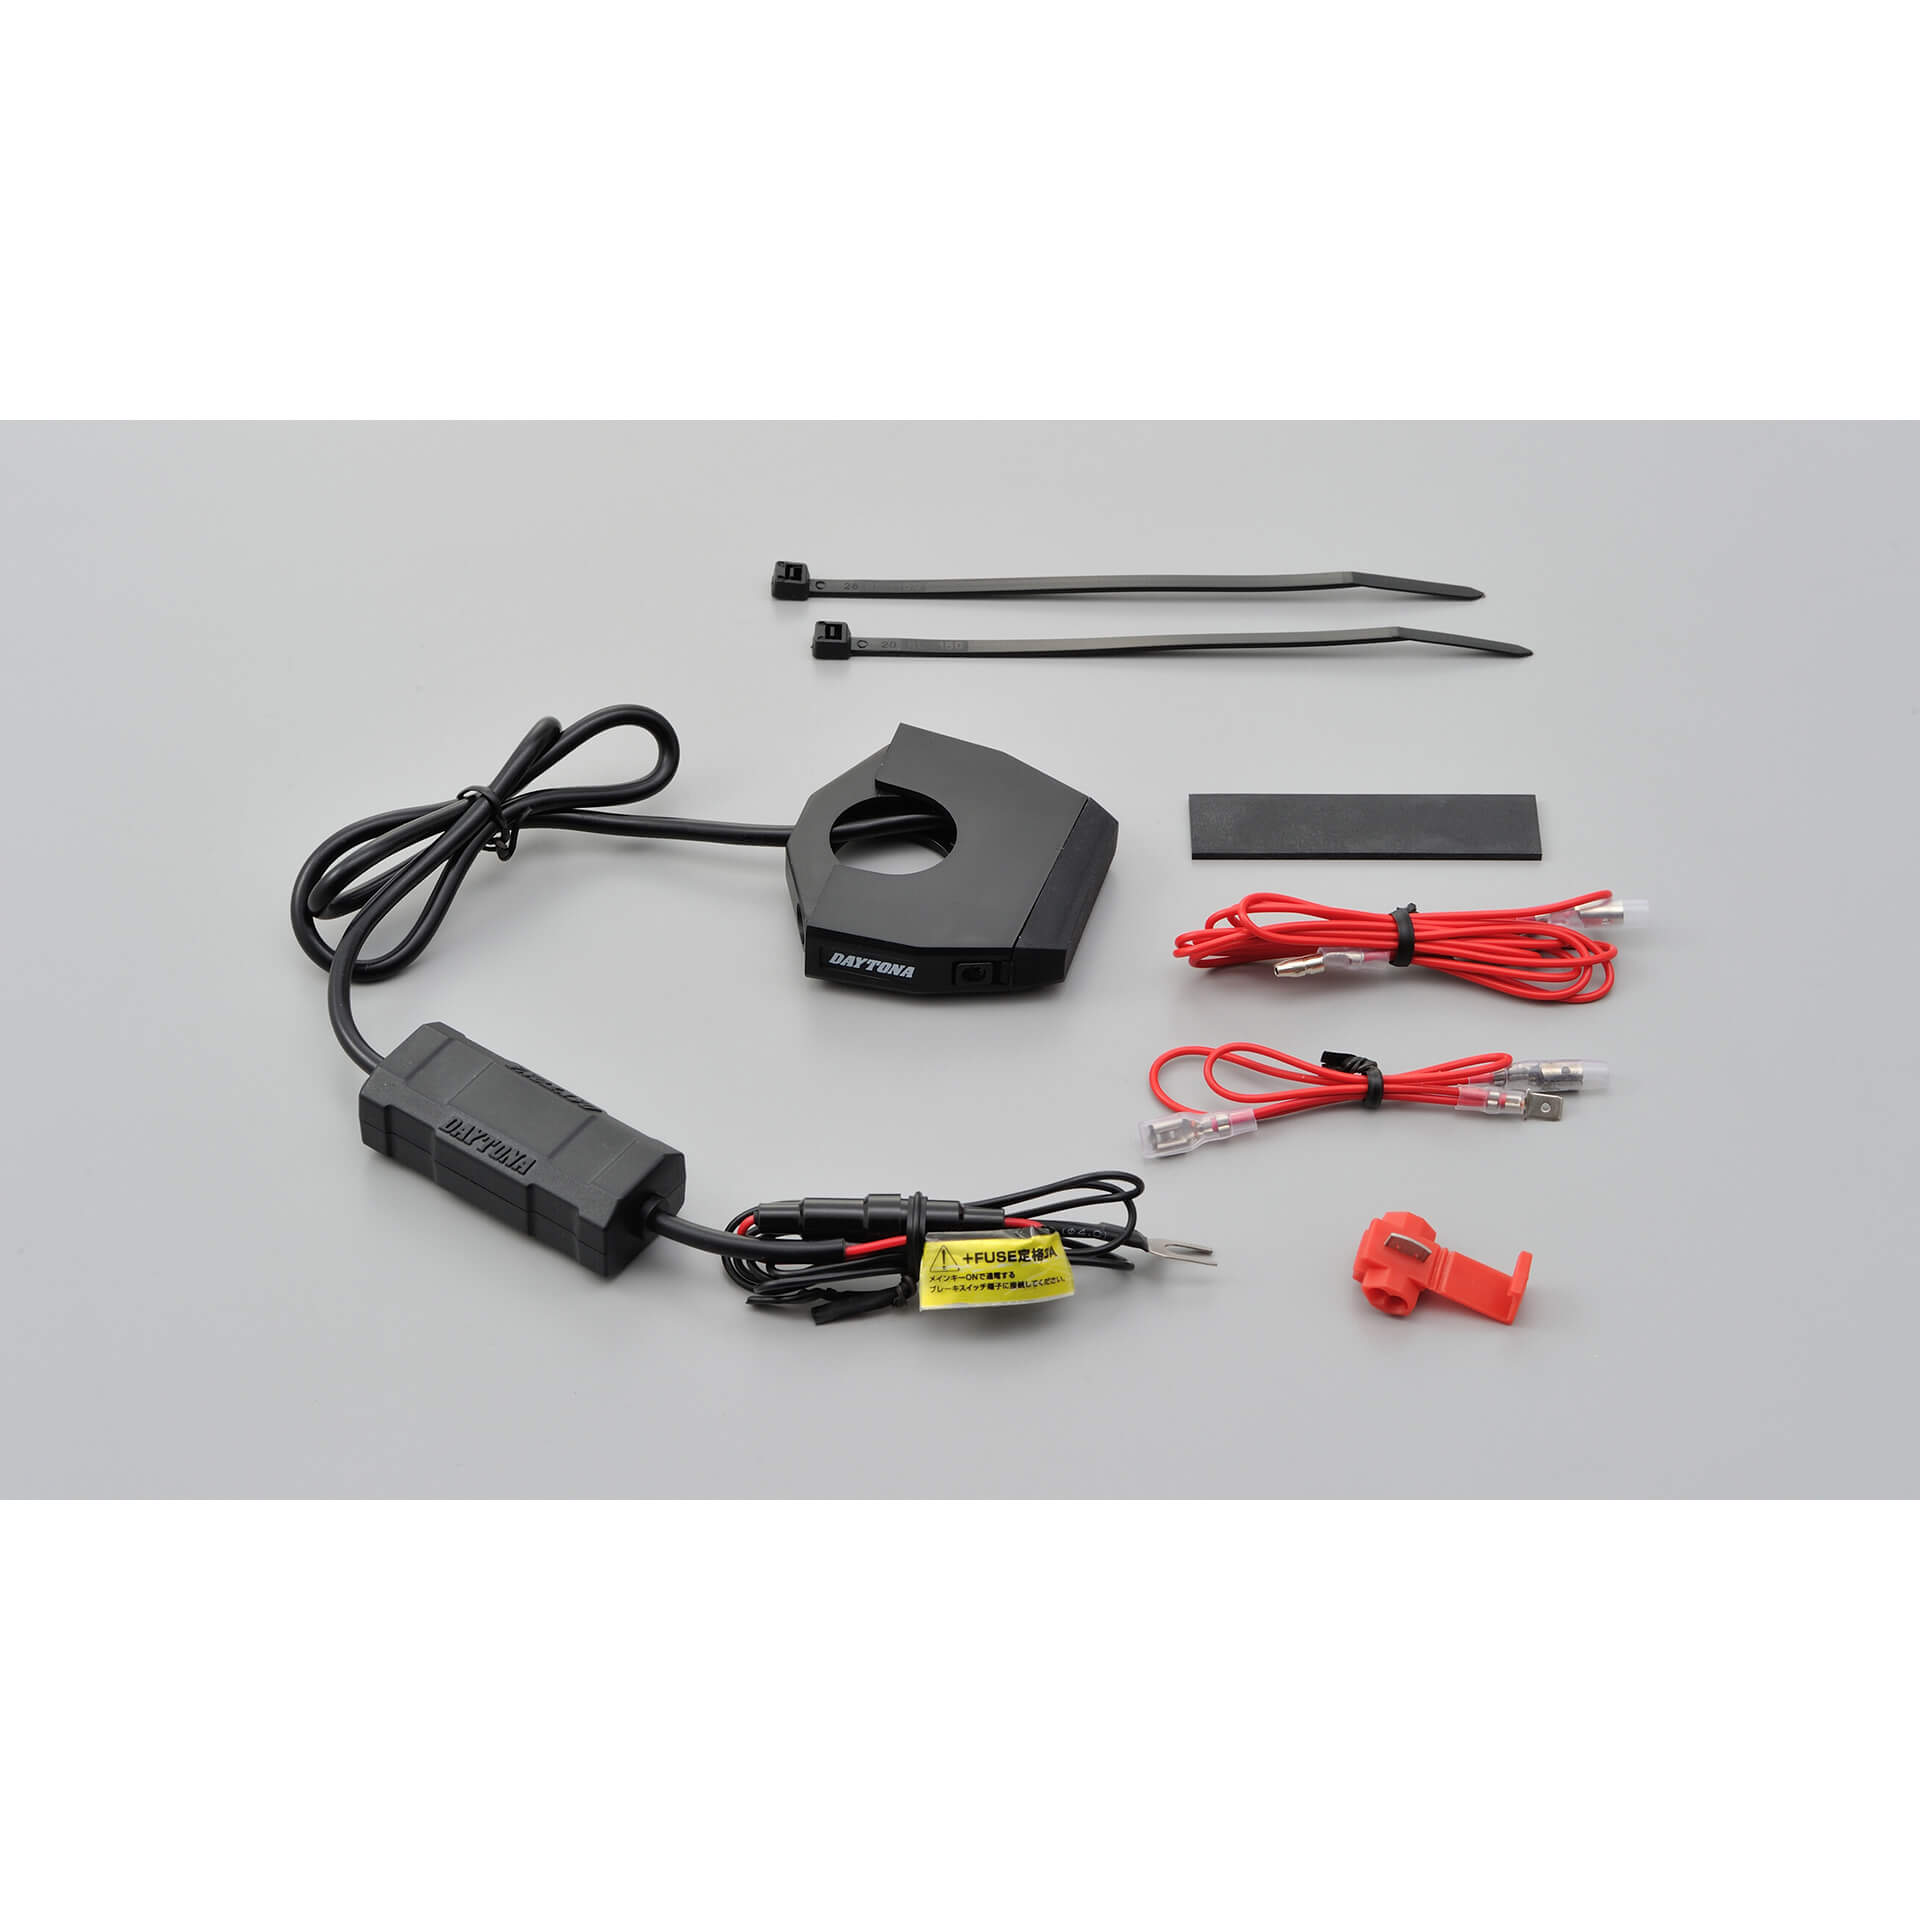 DAYTONA Corp. SLIM TYPE 1-fach oder 2-fach USB Steckdose Typ A zur  Lenkerbefestigung - günstig kaufen ▷ FC-Moto